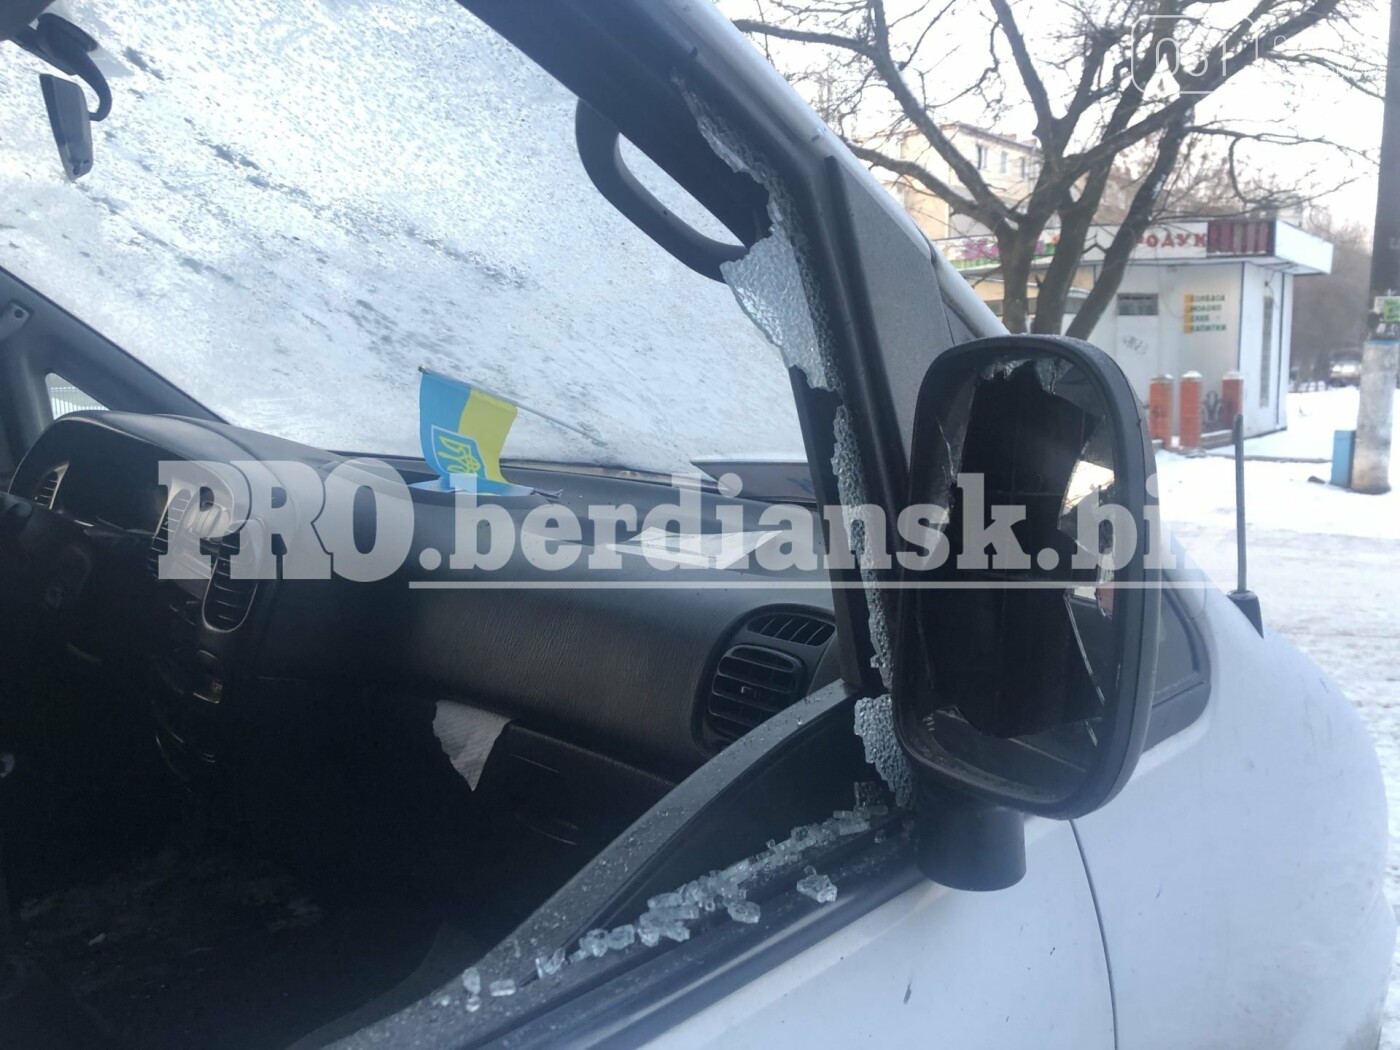 Во дворе общежития в Бердянске пытались взорвать автобус, - ФОТО, фото-4